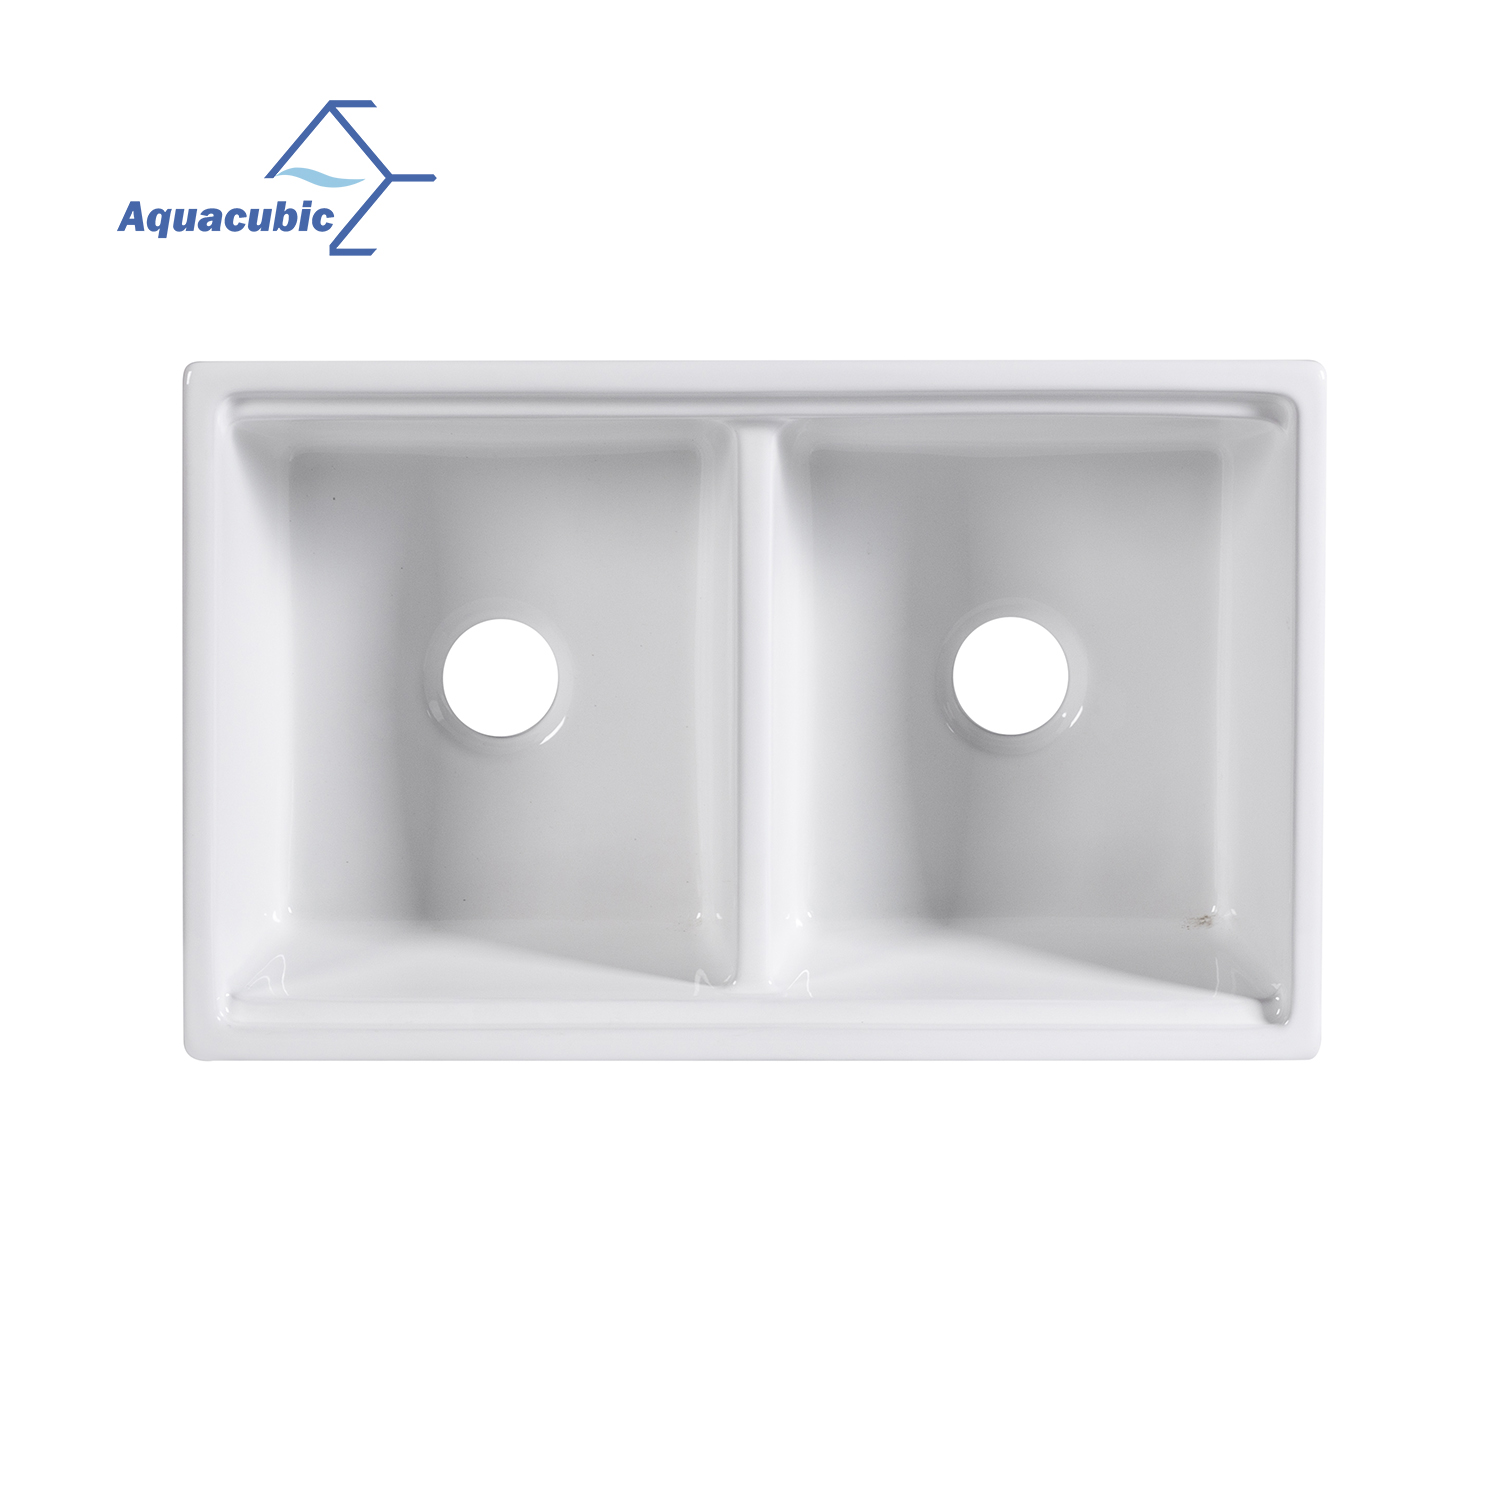 Aquacubic cUPC gecertificeerde onderbouw keramische dubbele kommen voor werkstation keuken wastafel